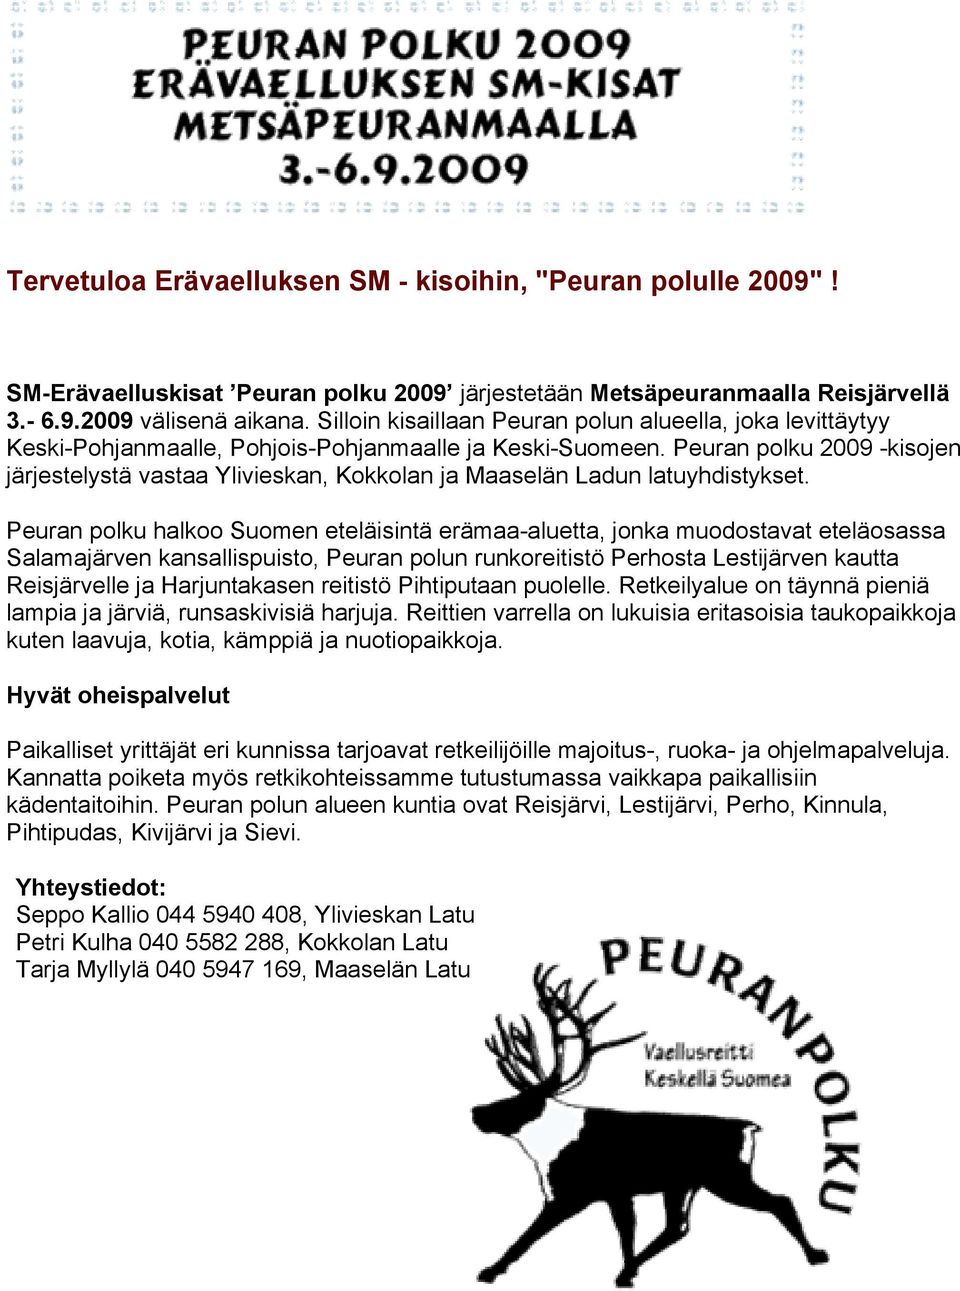 Peuran polku 2009 -kisojen järjestelystä vastaa Ylivieskan, Kokkolan ja Maaselän Ladun latuyhdistykset.